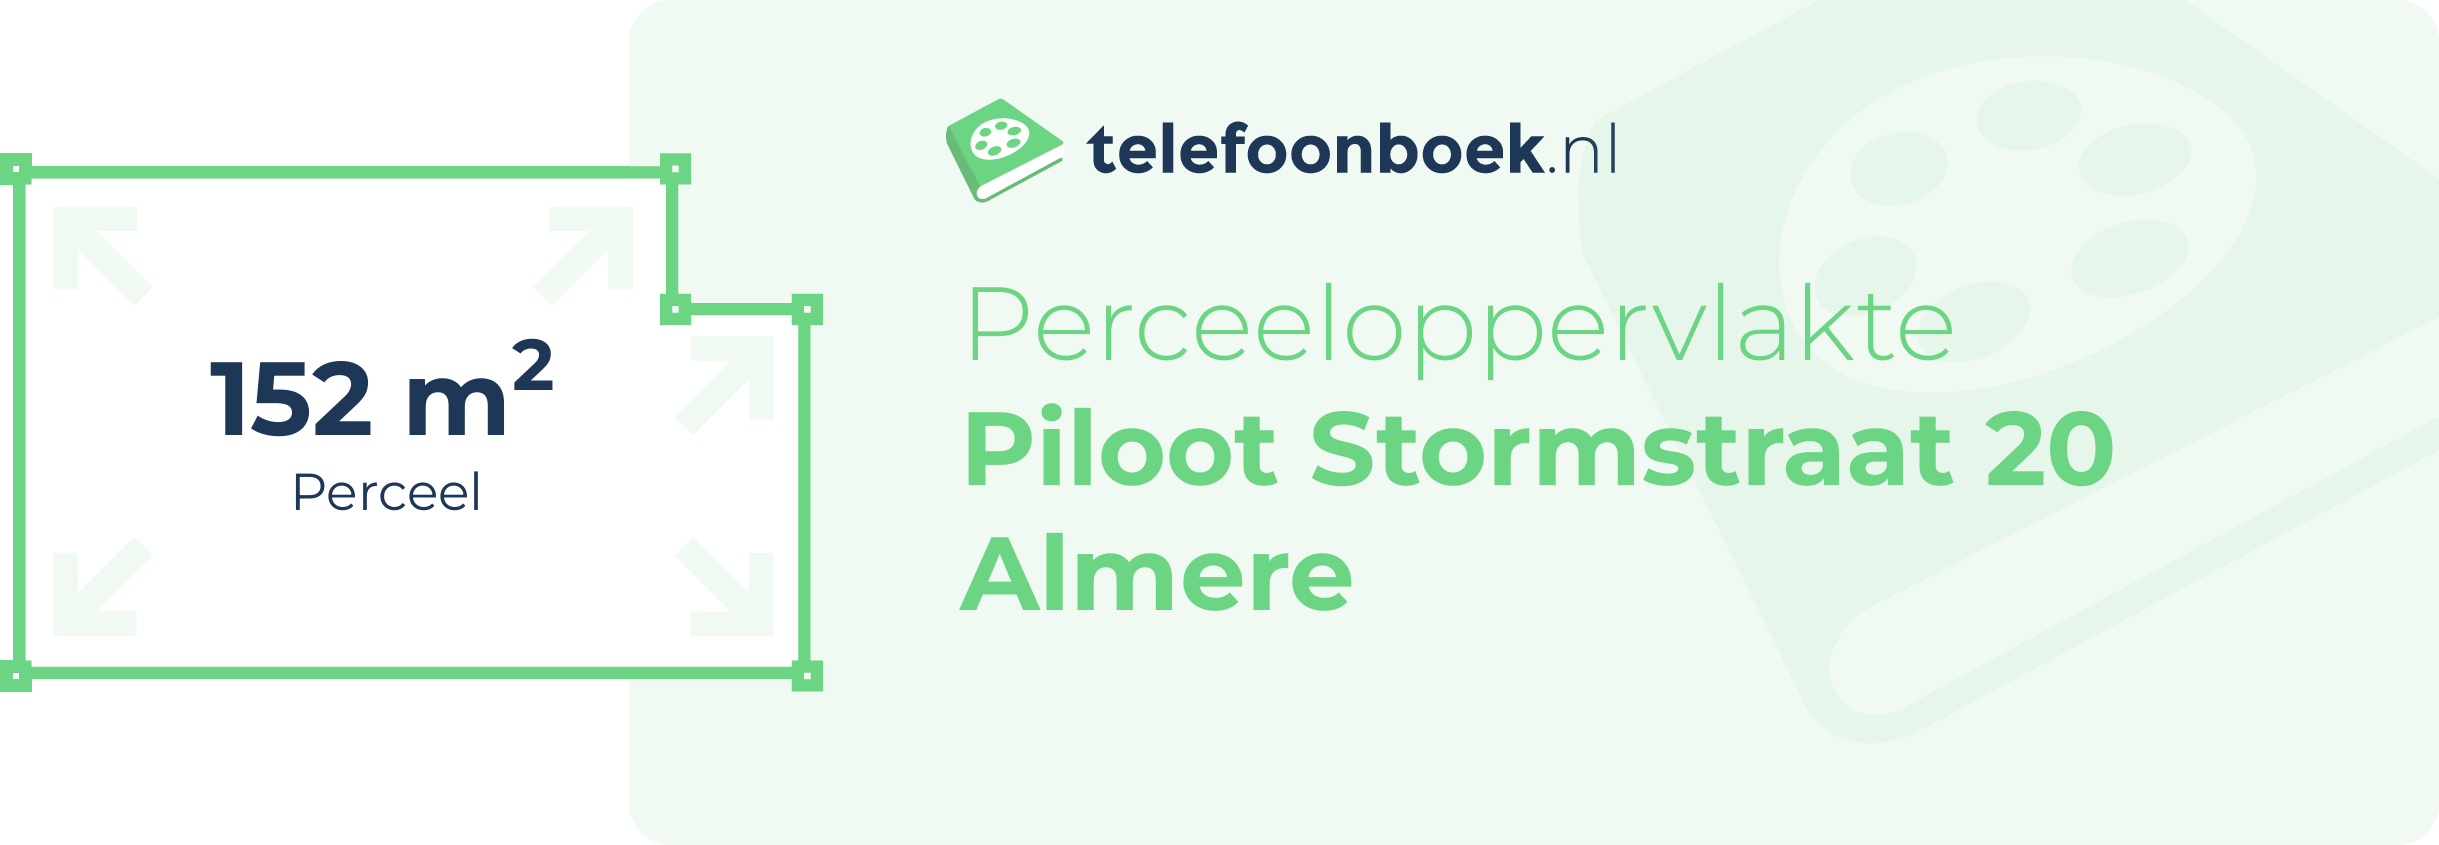 Perceeloppervlakte Piloot Stormstraat 20 Almere